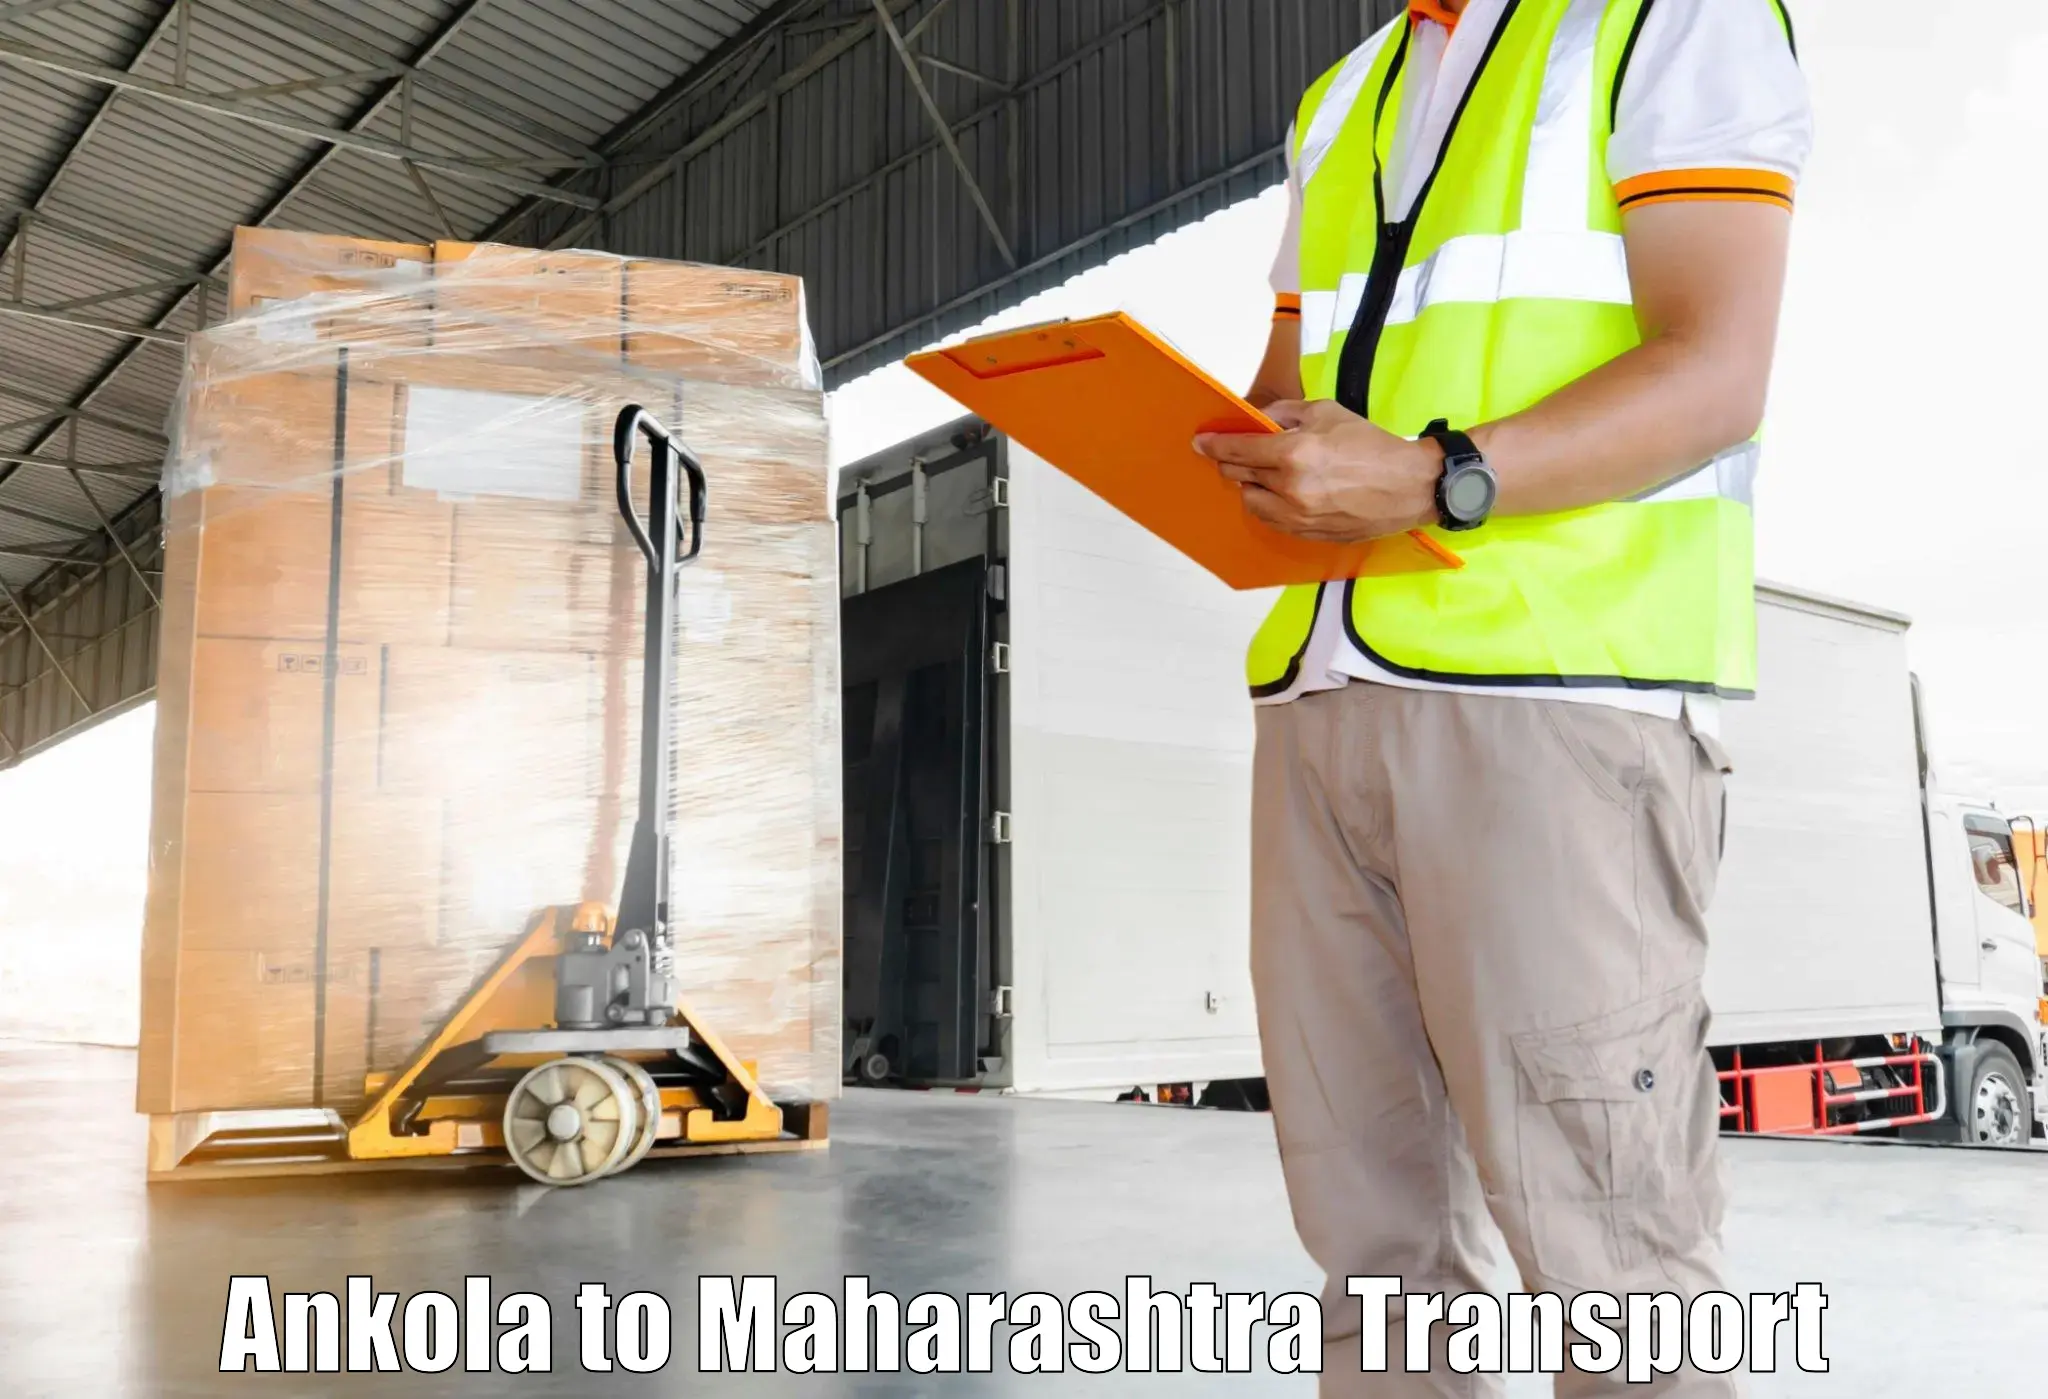 Transportation services Ankola to Mumbai Port